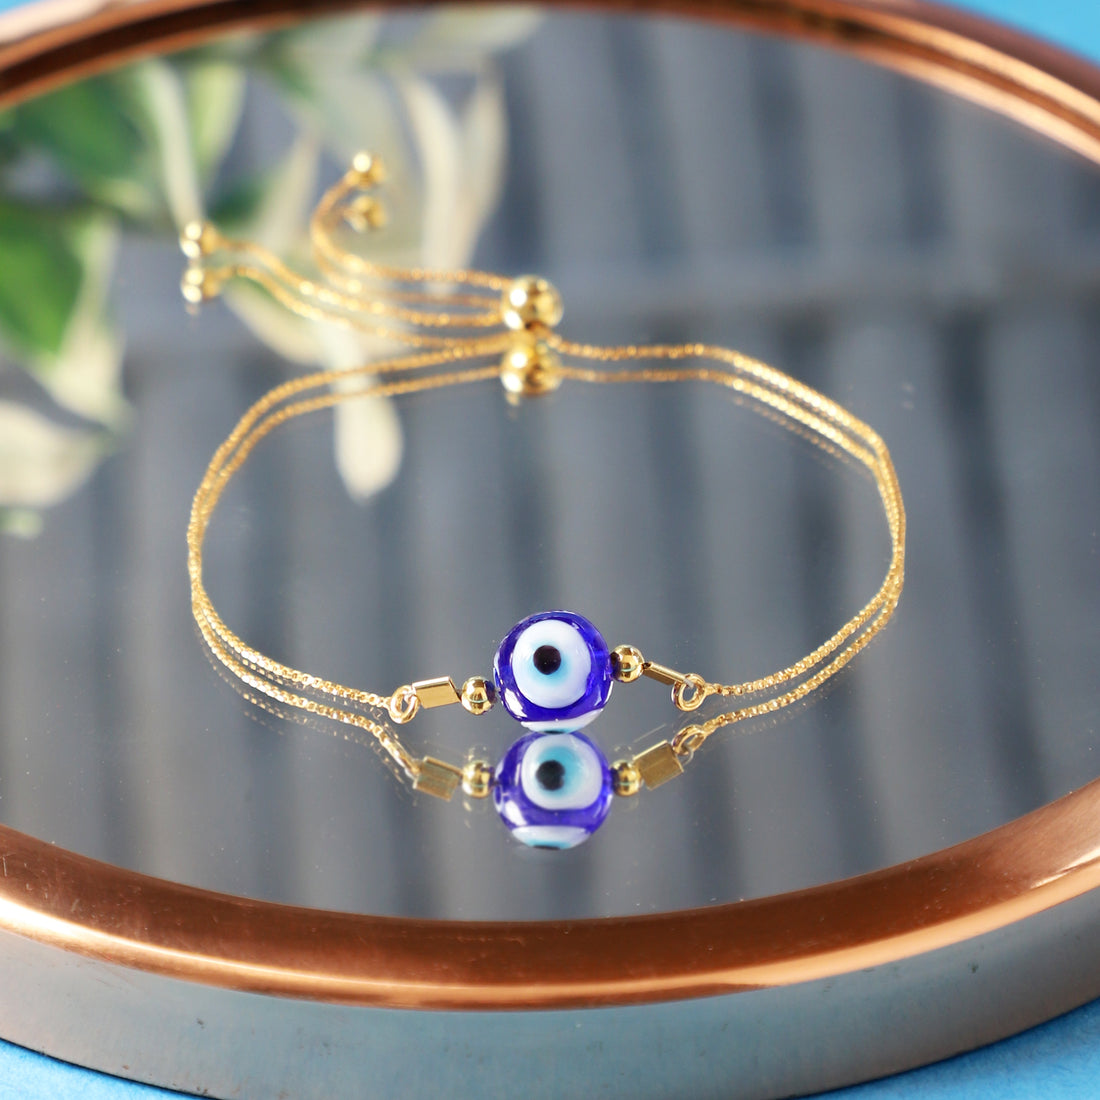 Evil Eye Symbolism in Bracelet Design